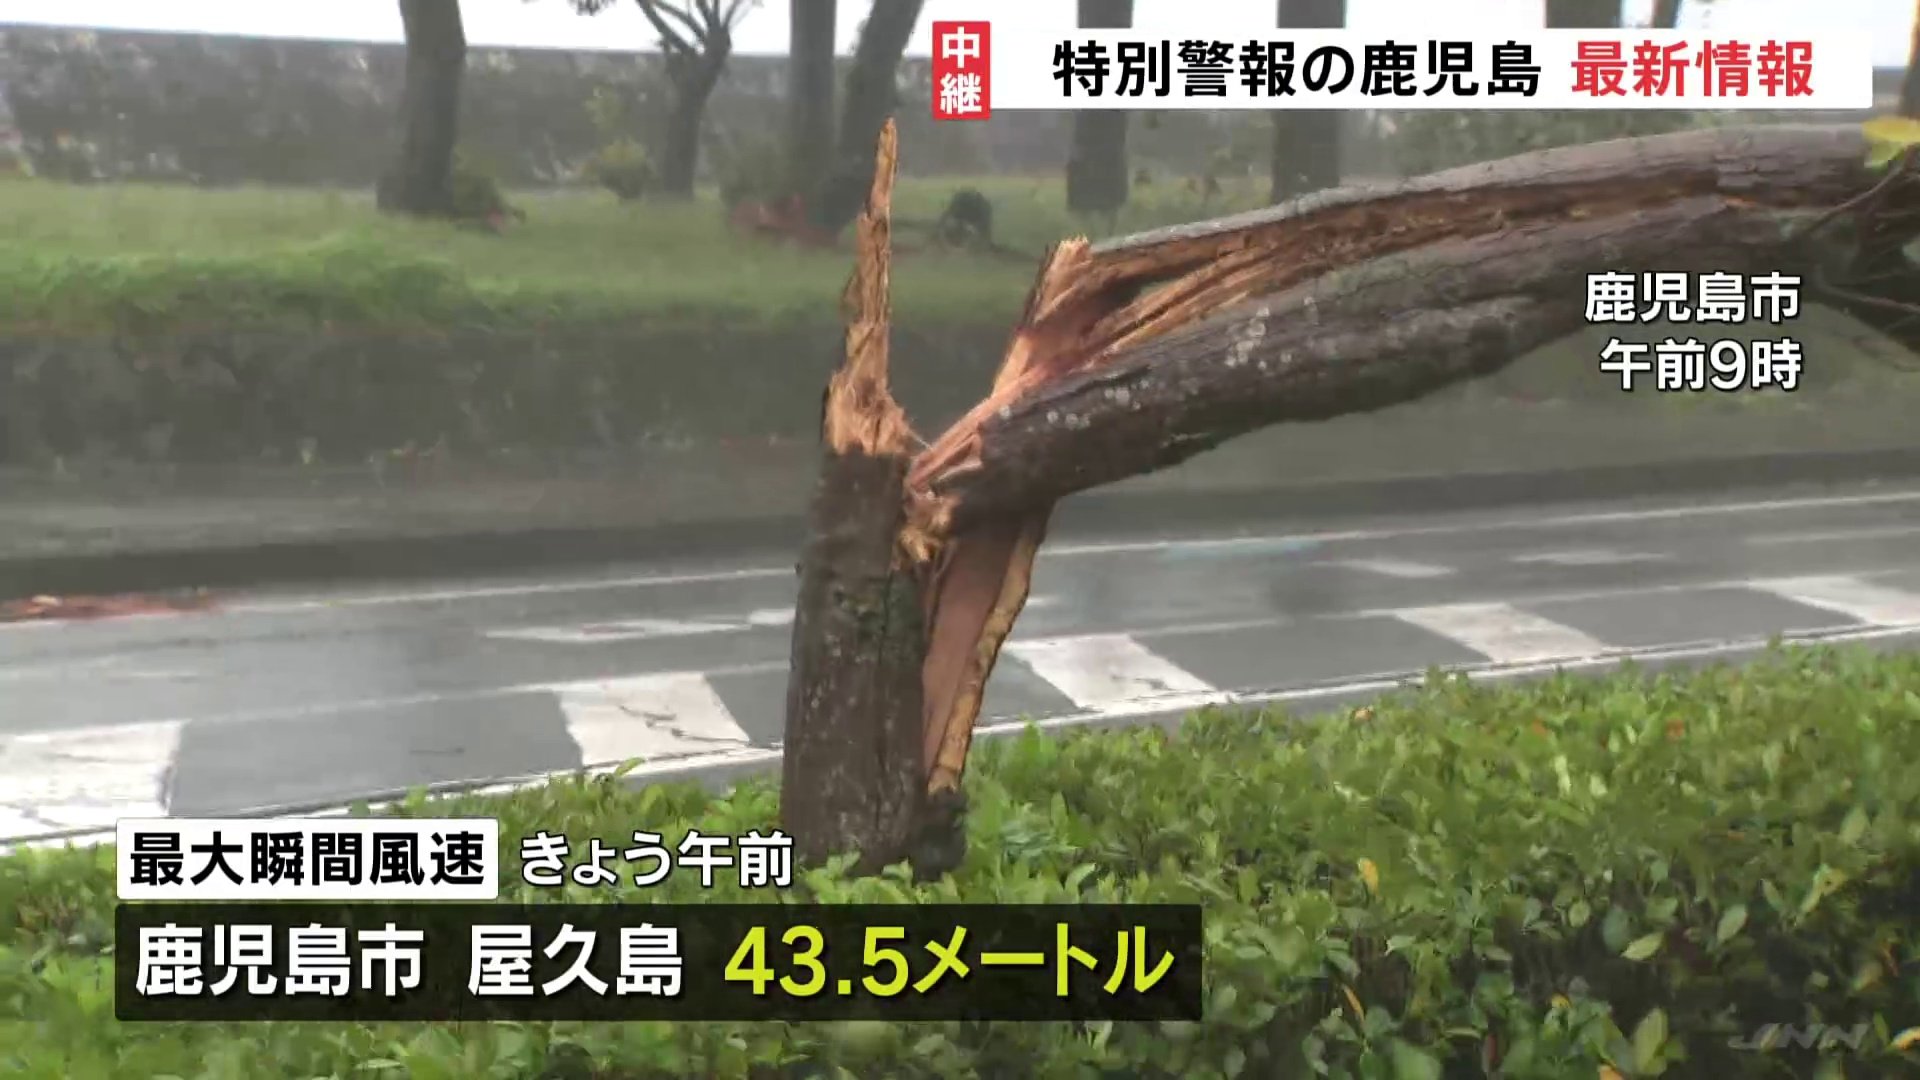 各地で木や標識が倒れる強風 台風14号接近 鹿児島市と屋久島で最大瞬間風速43 5メートル観測 最大級の警戒を Tbs News Dig